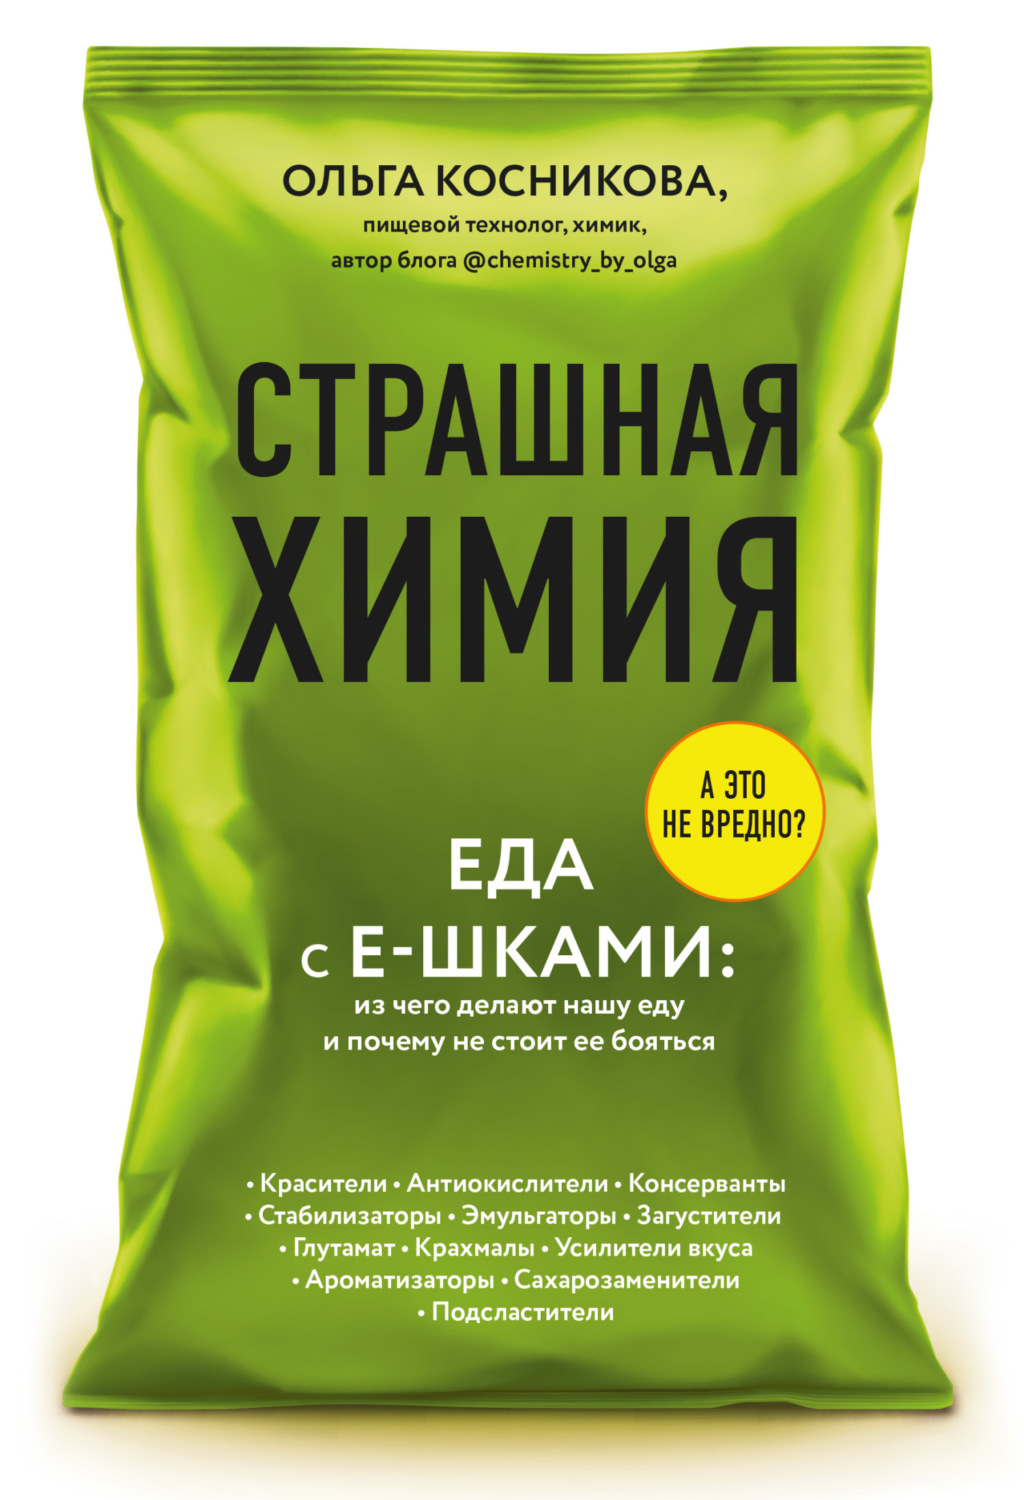 Скачать бесплатно наркотик под названием еда как в tor browser сделать русский язык gidra